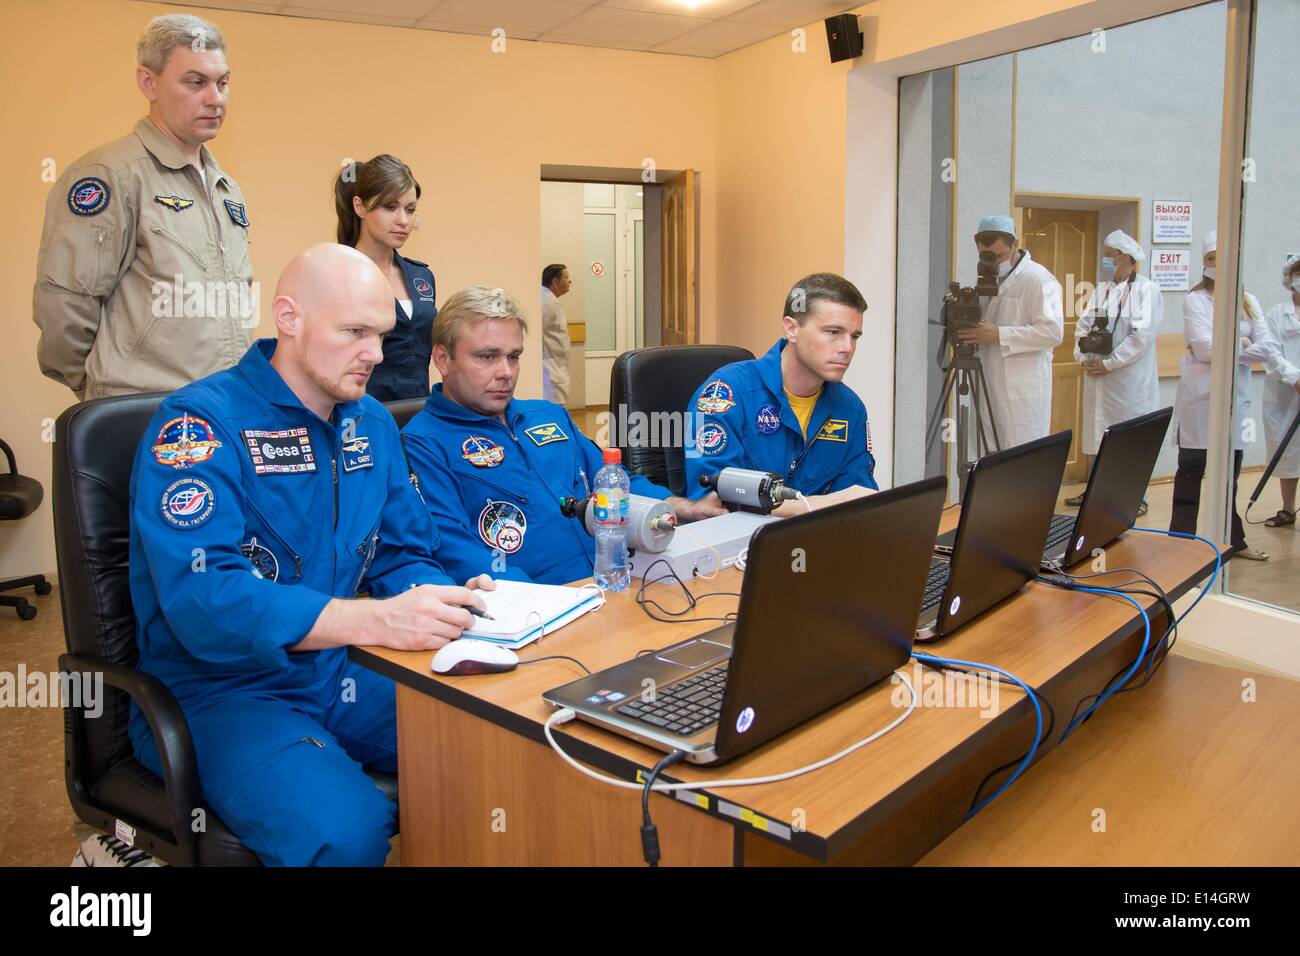 Los miembros de la tripulación Expedición ISS 41 Alexander Gerst de la Agencia Espacial Europea (izquierda), Max Suraev de la Agencia Espacial Federal Rusa, centro y Reid Wiseman de la NASA práctica sobre técnicas de rendezvous simuladores portátil en el cosmonauta Hotel Mayo 21, 2014 en Baikonur, Kazajstán. El trío lanzará el 29 de mayo en la nave Soyuz TMA-13M desde el cosmódromo de 5 ½ meses de misión en la Estación Espacial Internacional. Foto de stock